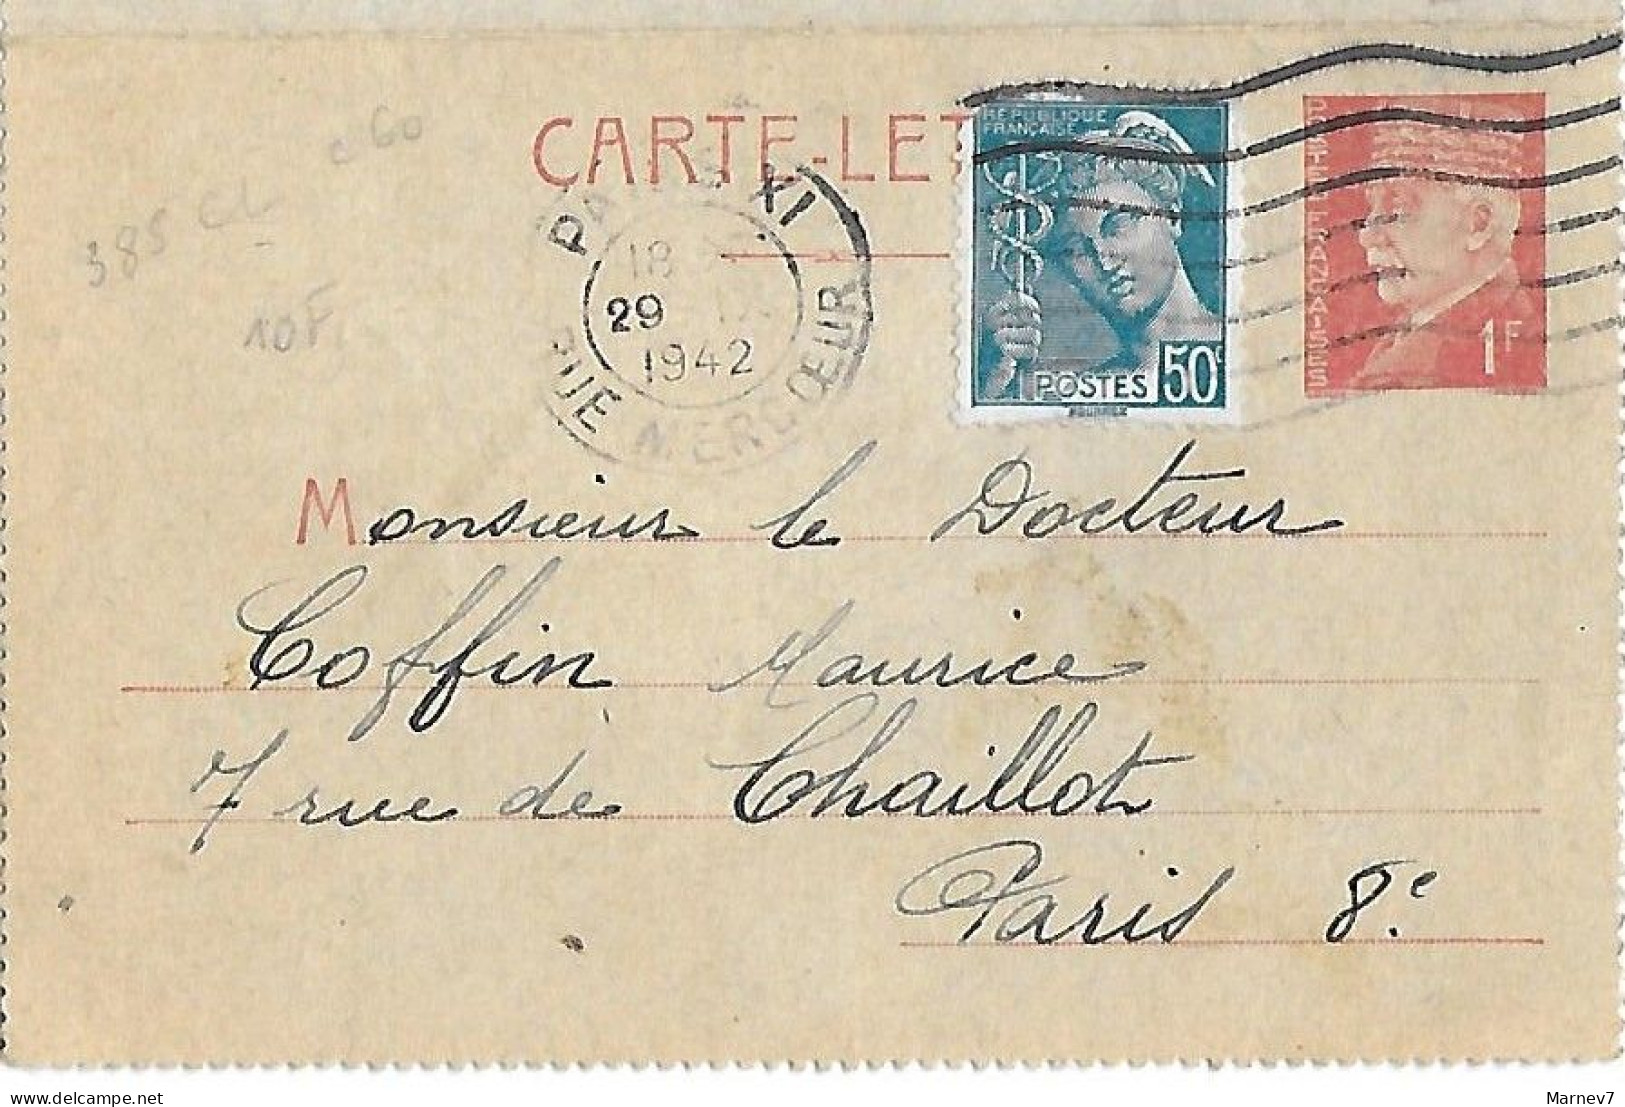 Entier - Carte-lettre 1Fr Pétain 514-CL1 - - Cad PARIS XI 29 IX 1942 - Rue Mercoeur - - Storia Postale